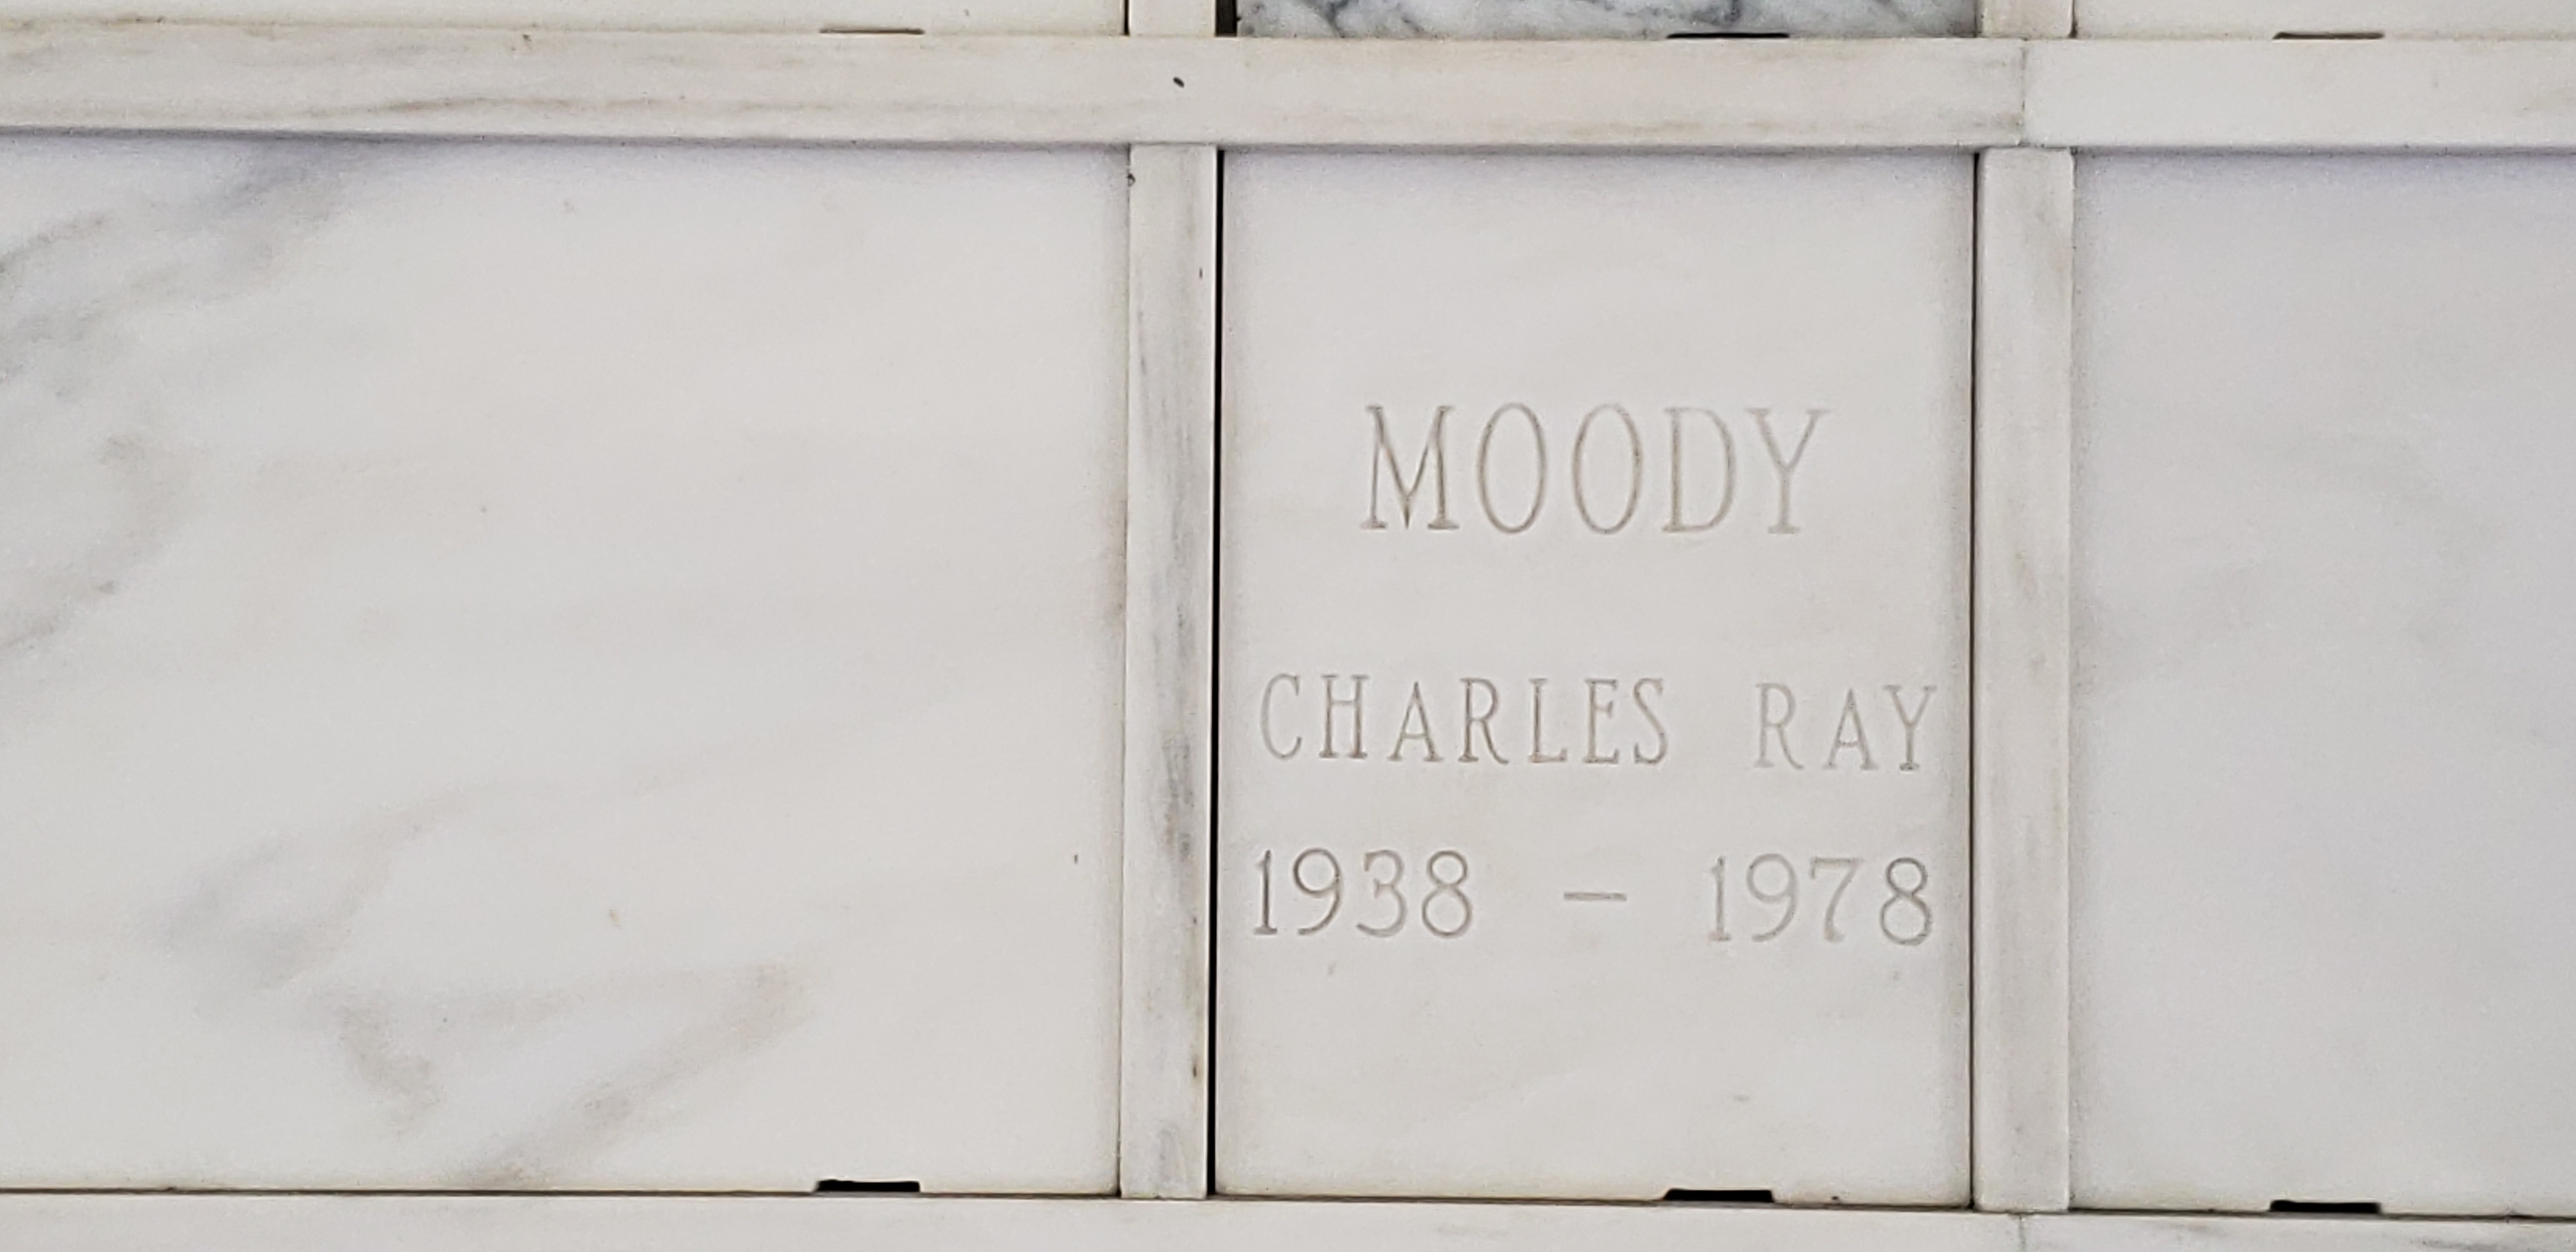 Charles Ray Moody